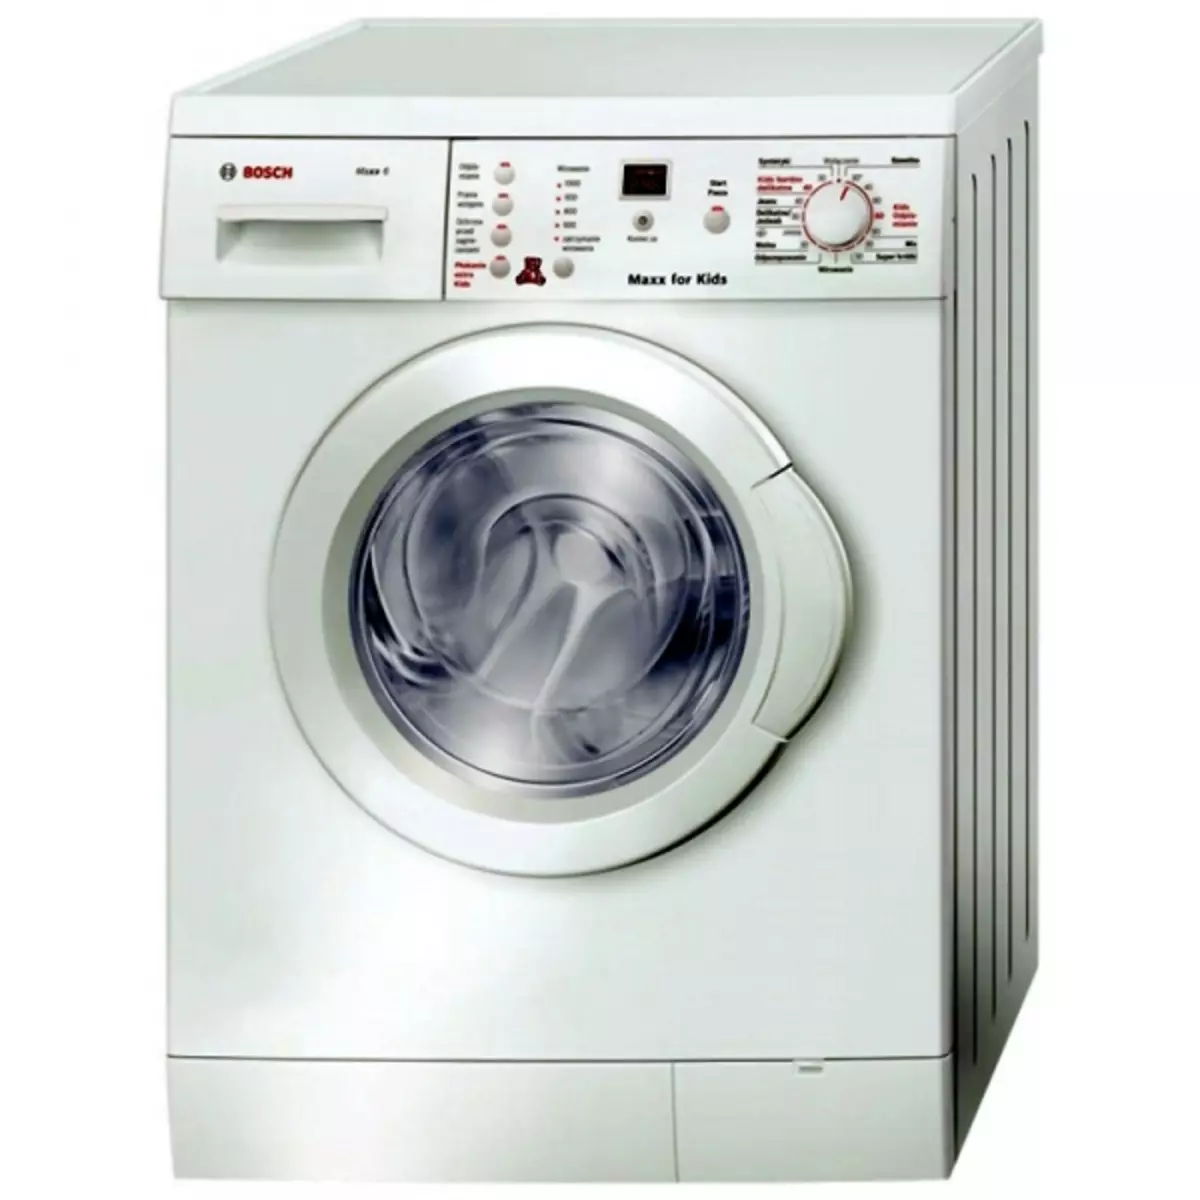 Ícones na máquina de lavar roupa, modos e decodificação